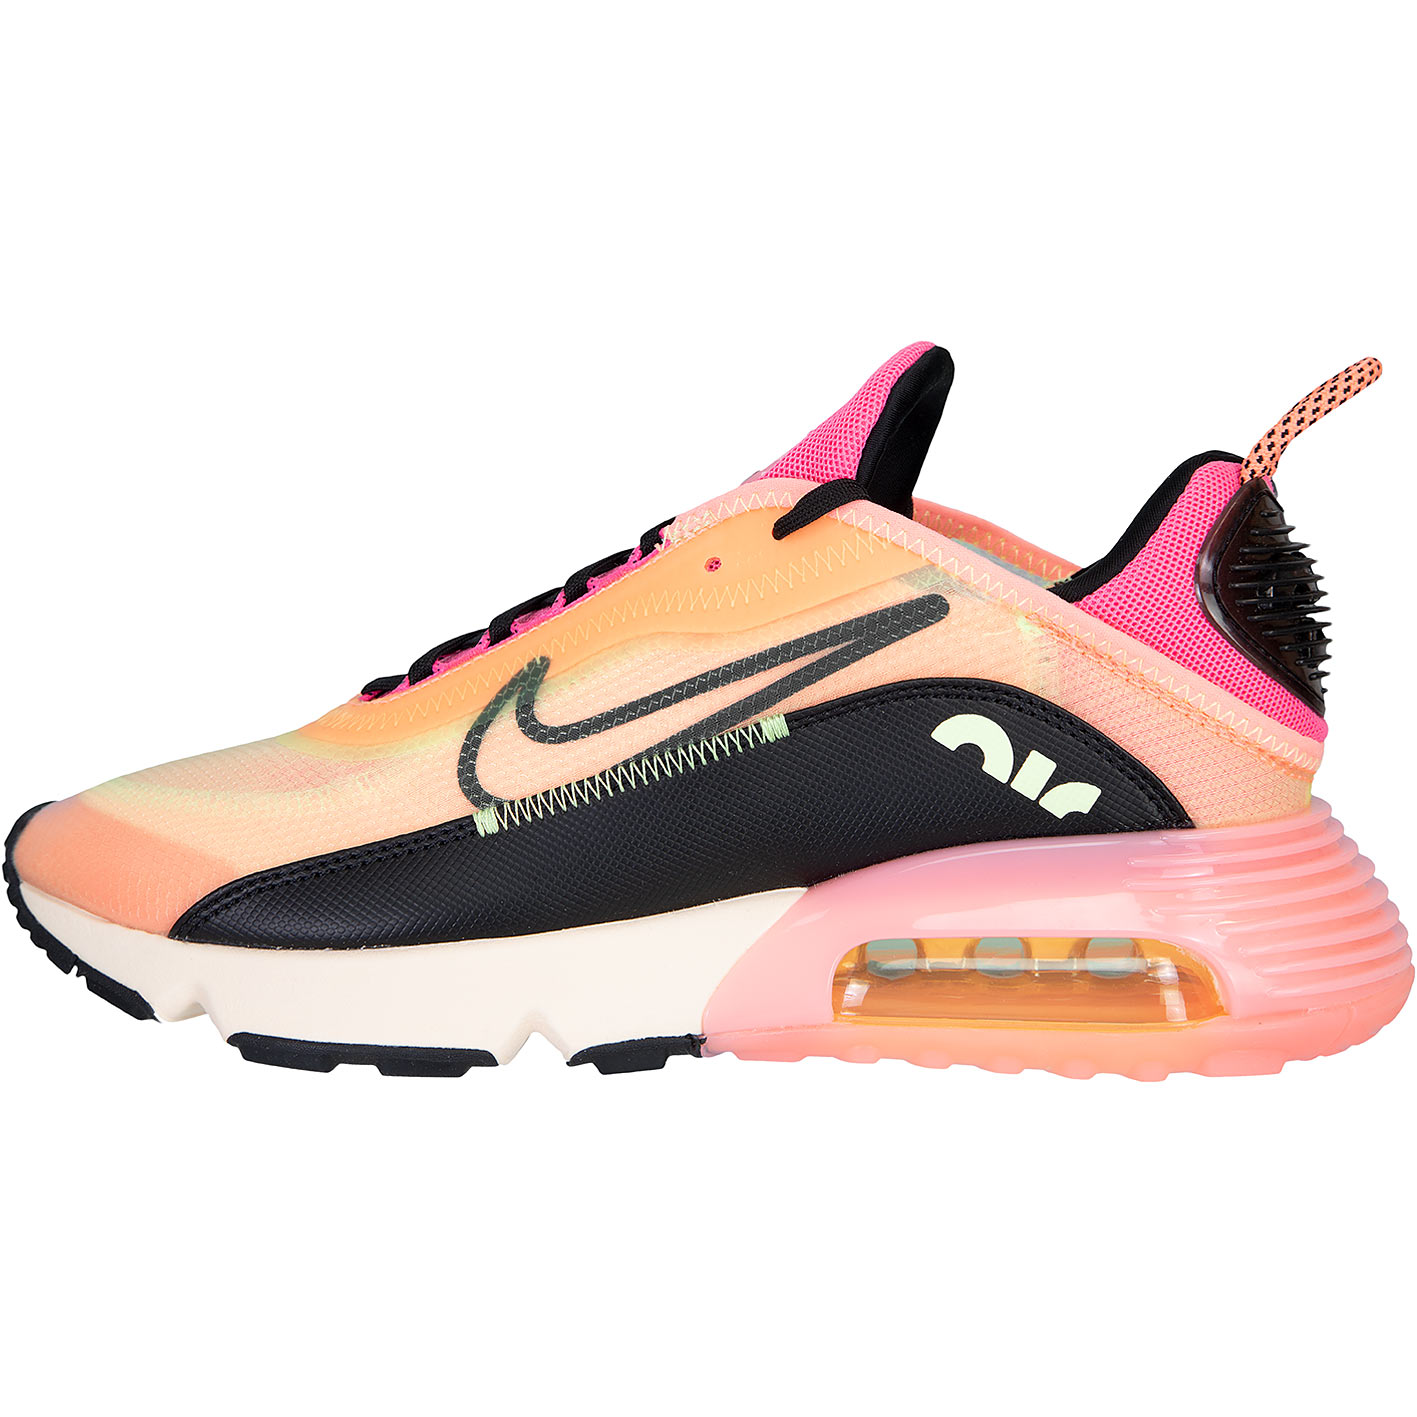 ☆ Nike Air Max 2090 Damen Sneaker volt/rosa/schwarz - hier bestellen!